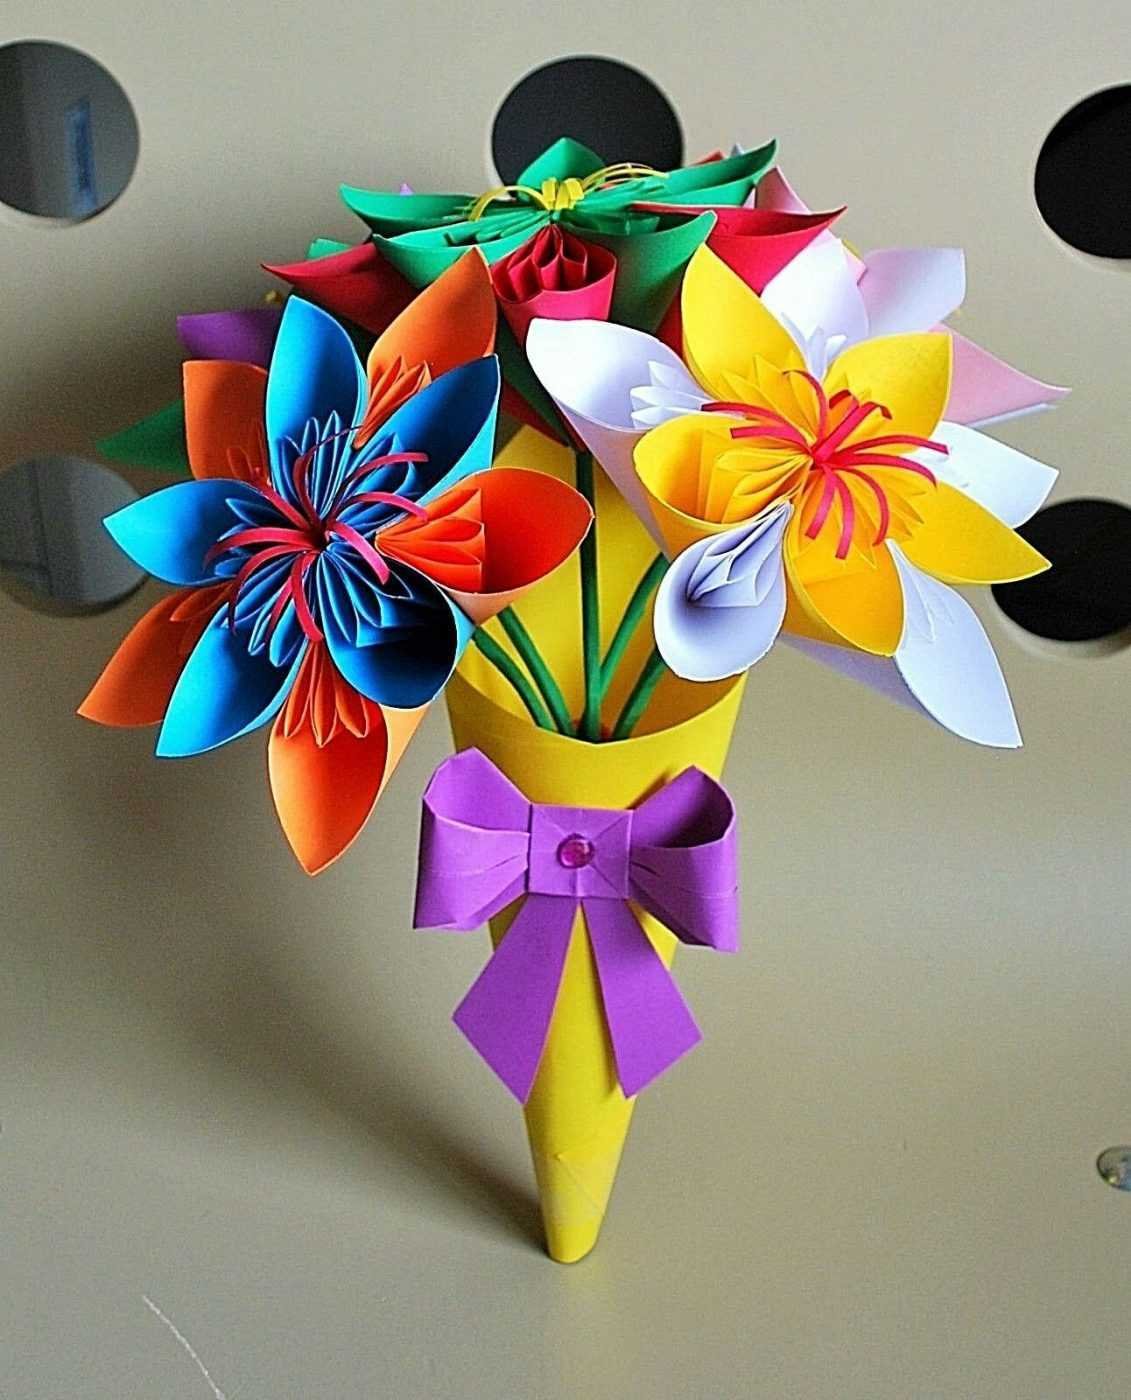 Поделки из бумаги своими руками для школы. Поделка цветы. Бумажный букет цветов. Объемная однерка из бумаги. Букет оригами.